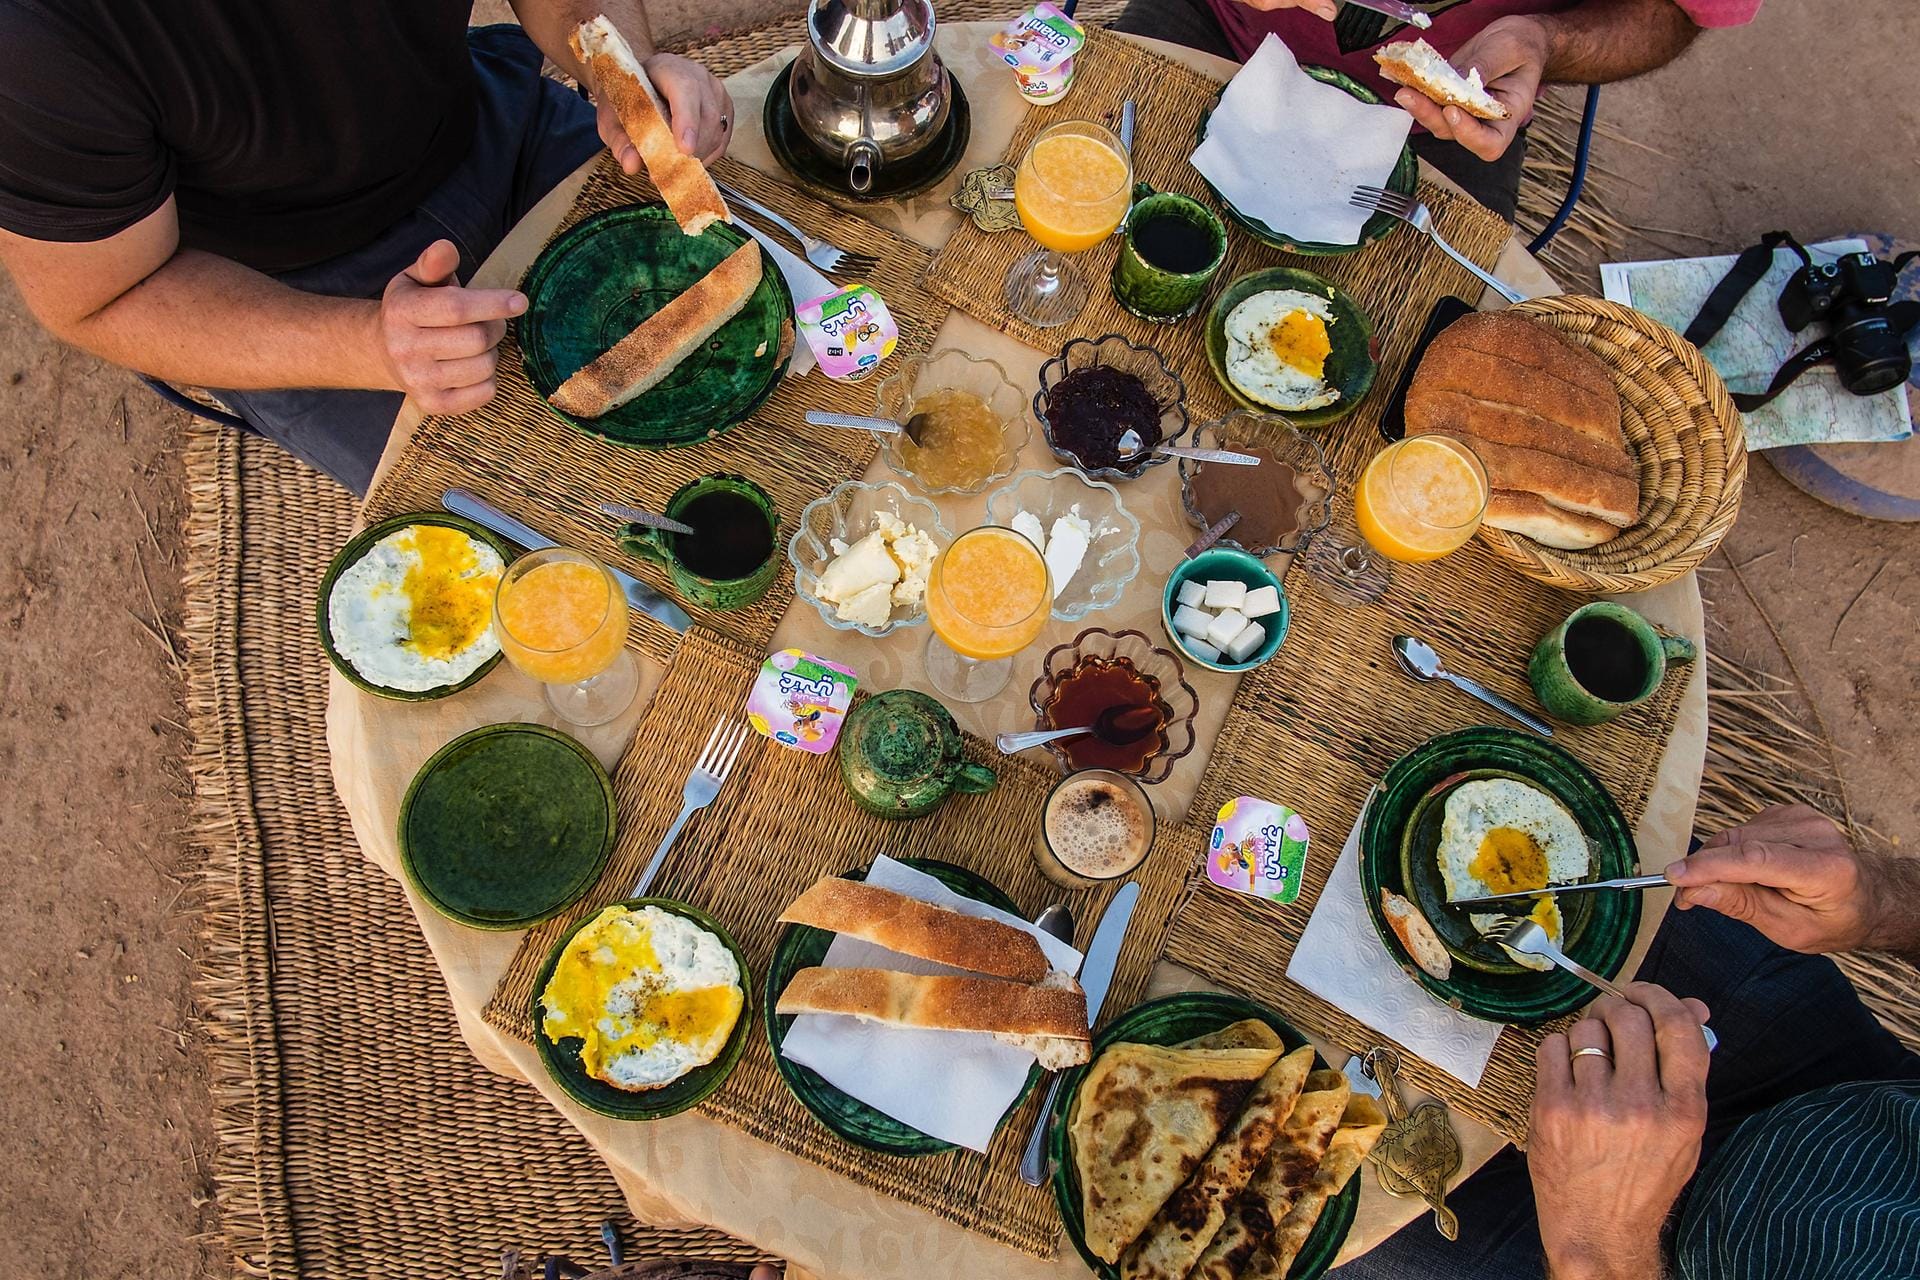 Ein reich gedeckter Frühstückstisch: Welche Lebensmittel bieten die beste Basis für ein ausgewogenes Frühstück?